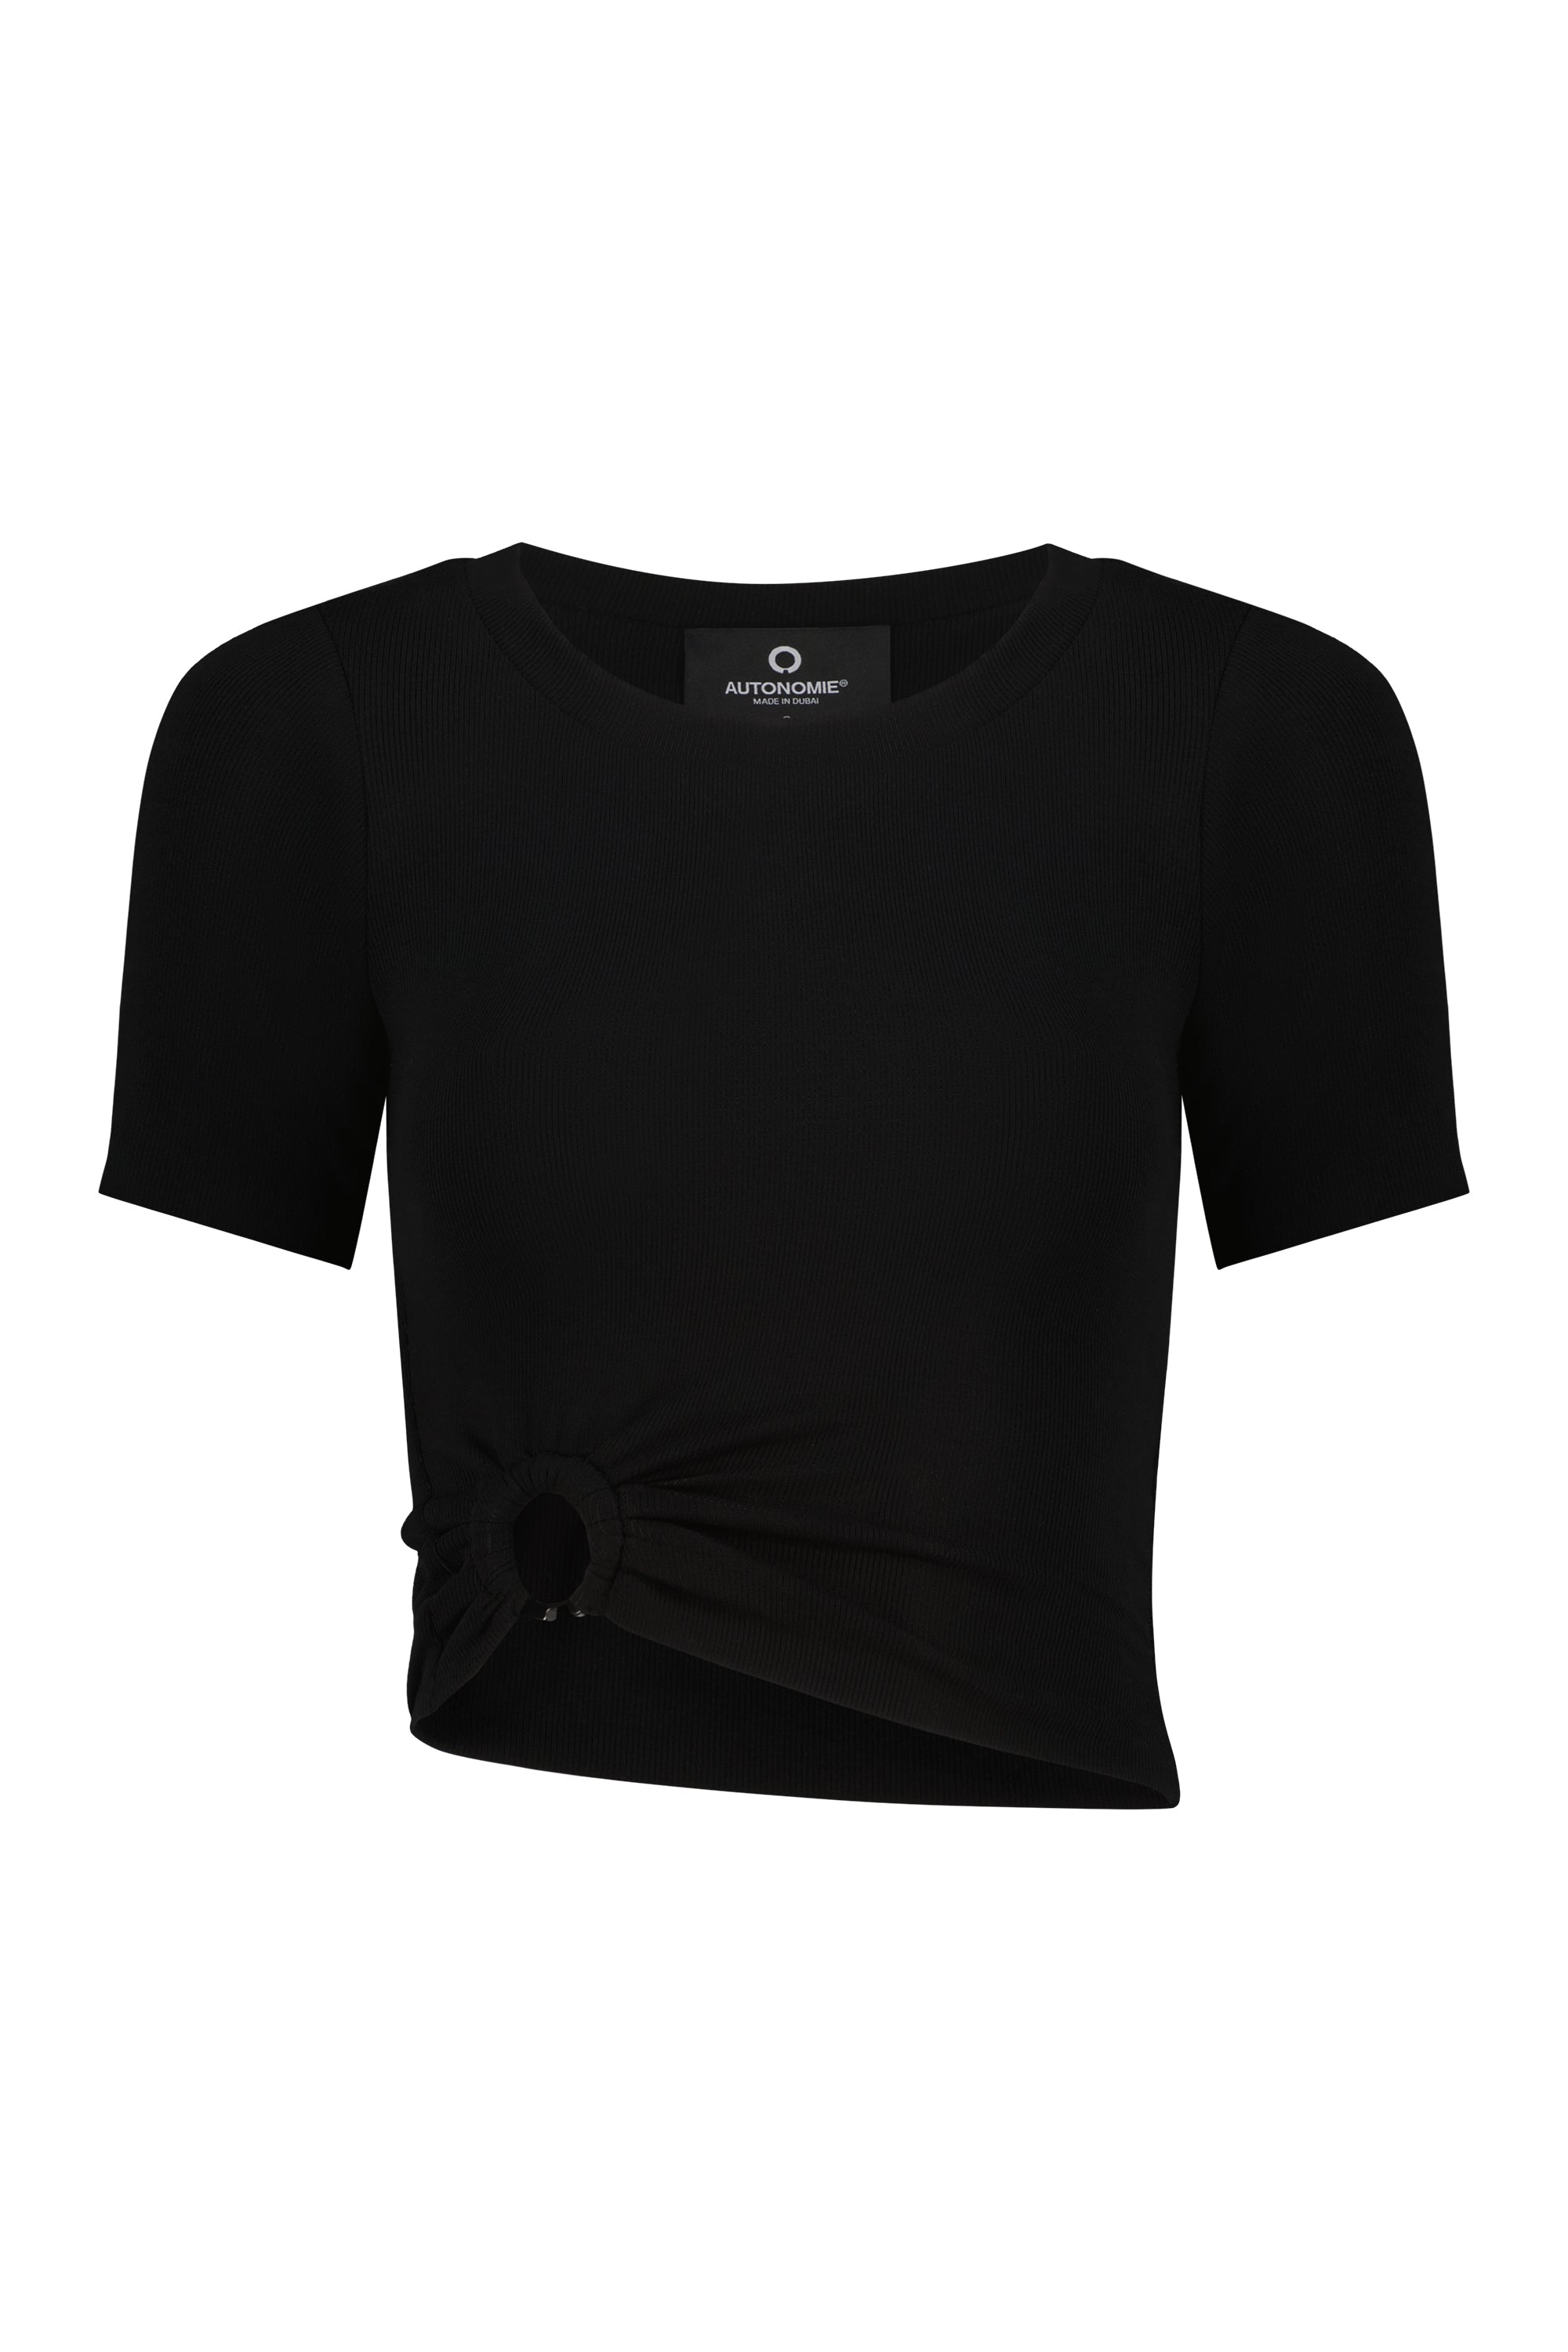 Selene T-Shirt Black